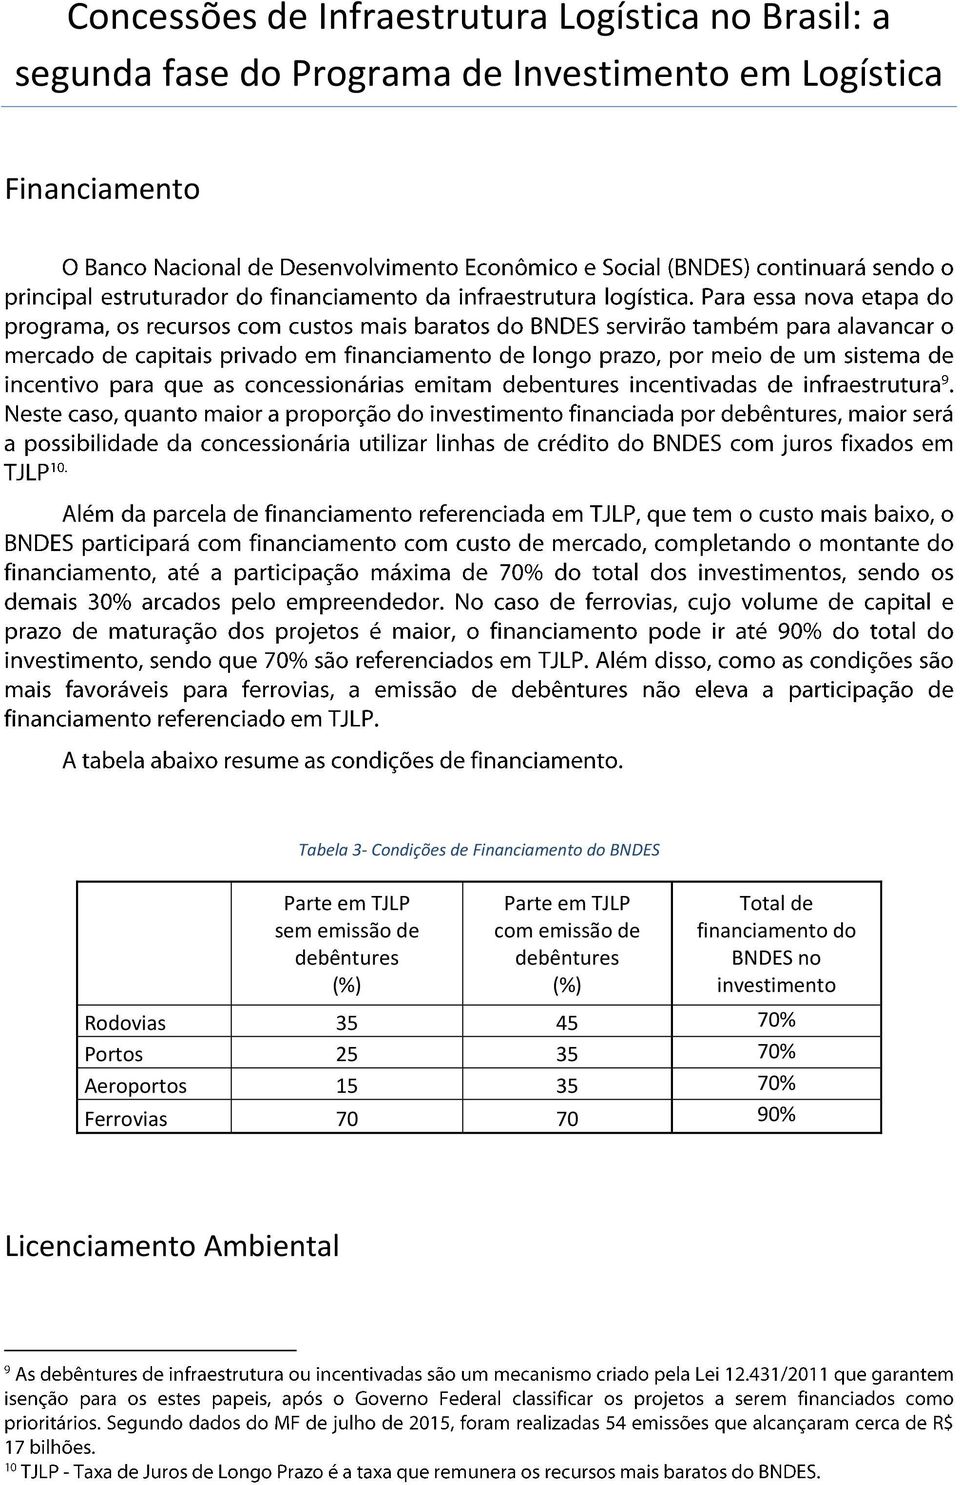 debêntures (%) Parte em TJLP com emissão de debêntures (%) Total de financiamento do BNDES no